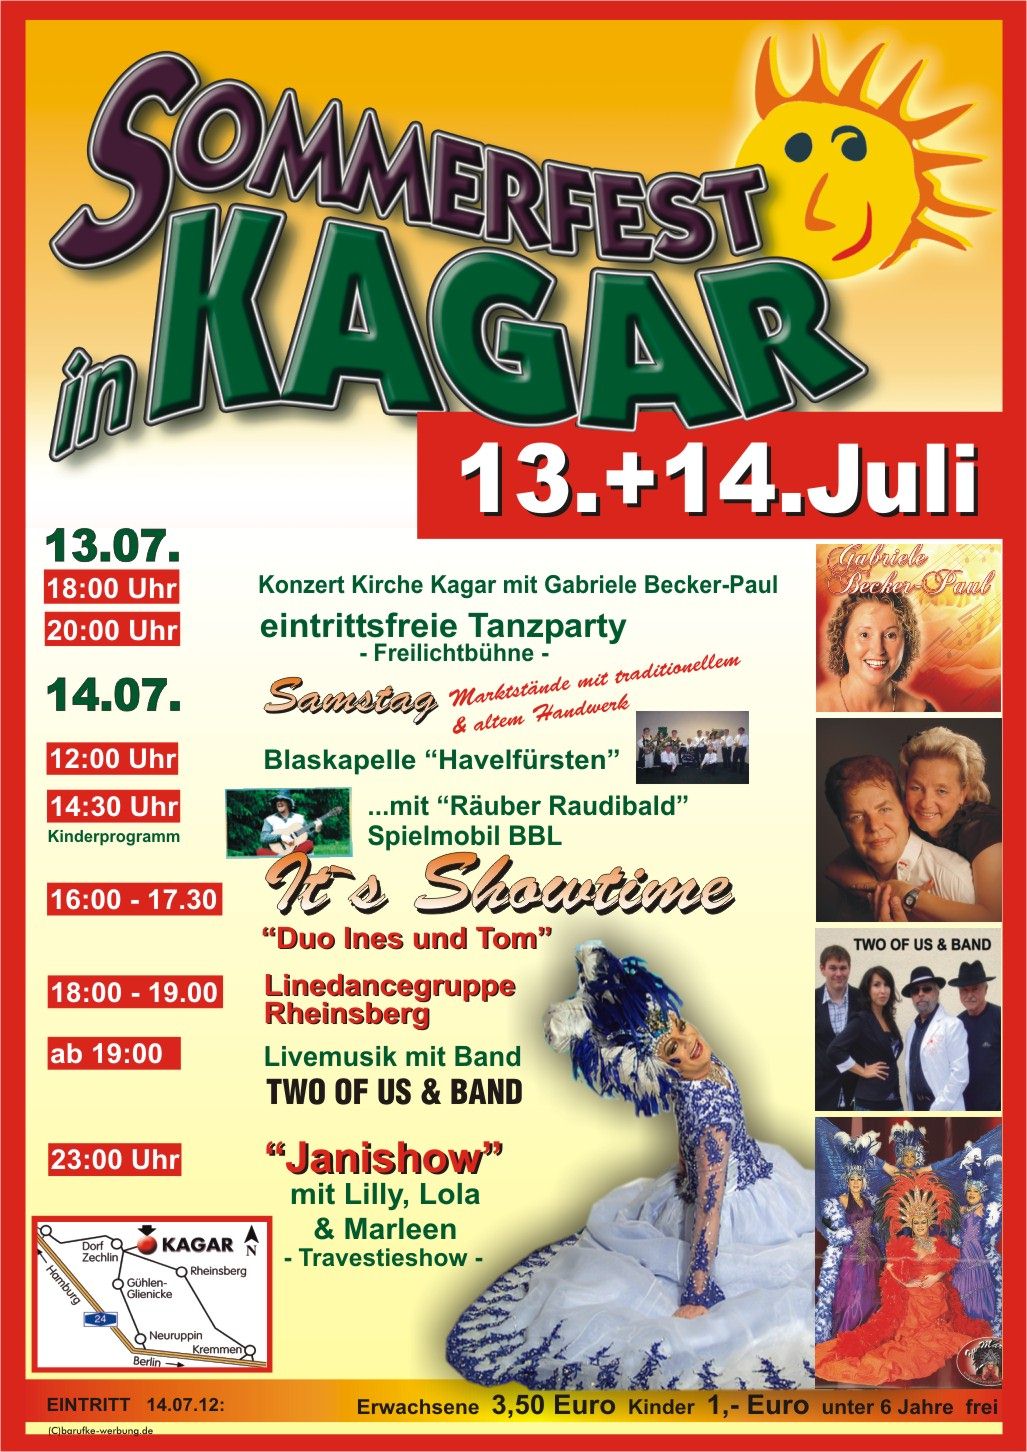 Sommerfest 2012